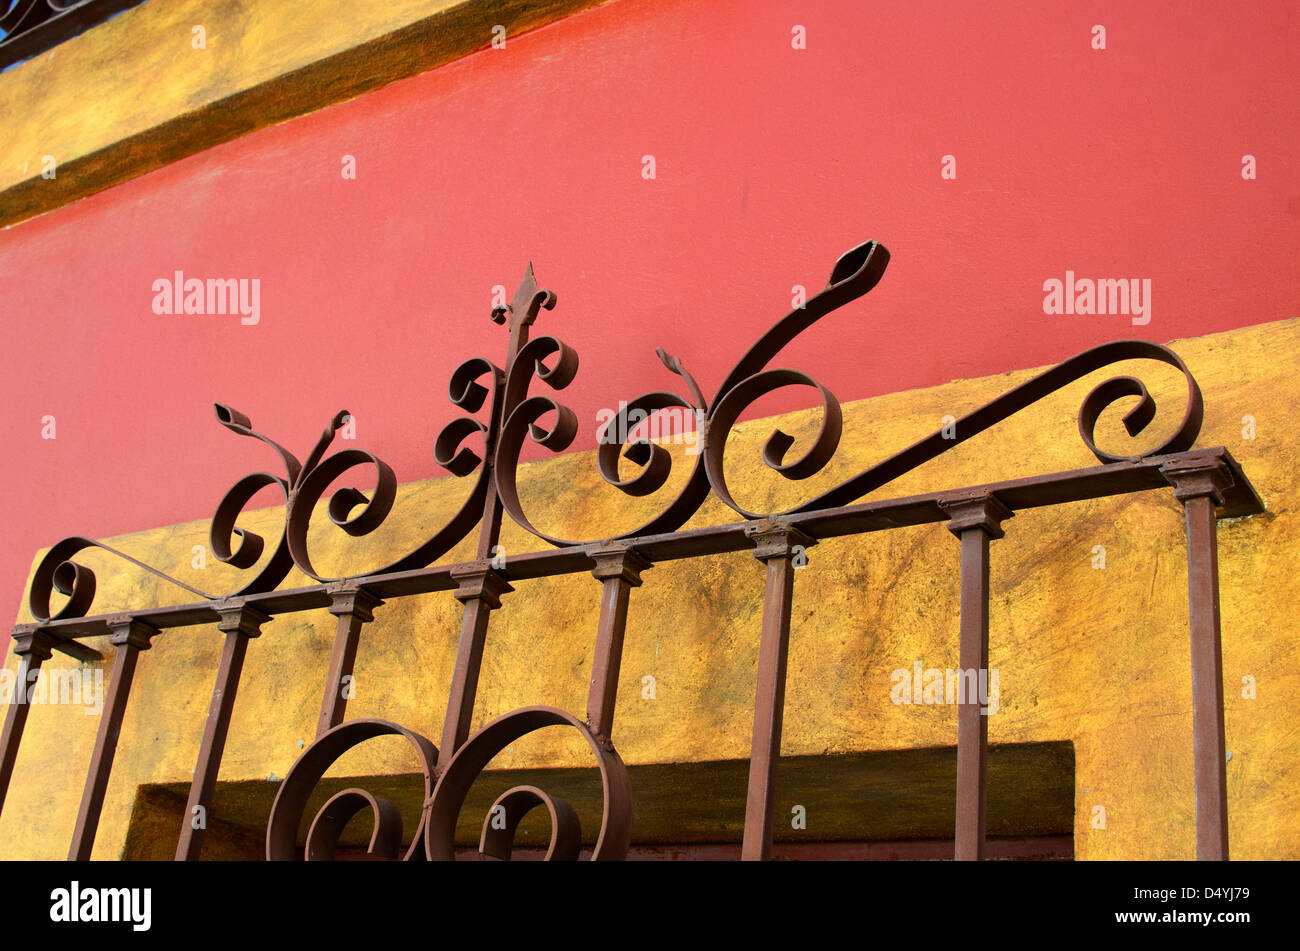 Une grille de sécurité en fer forgé à Oaxaca, Mexique, sur un mur de plâtre jaune et orange. Banque D'Images